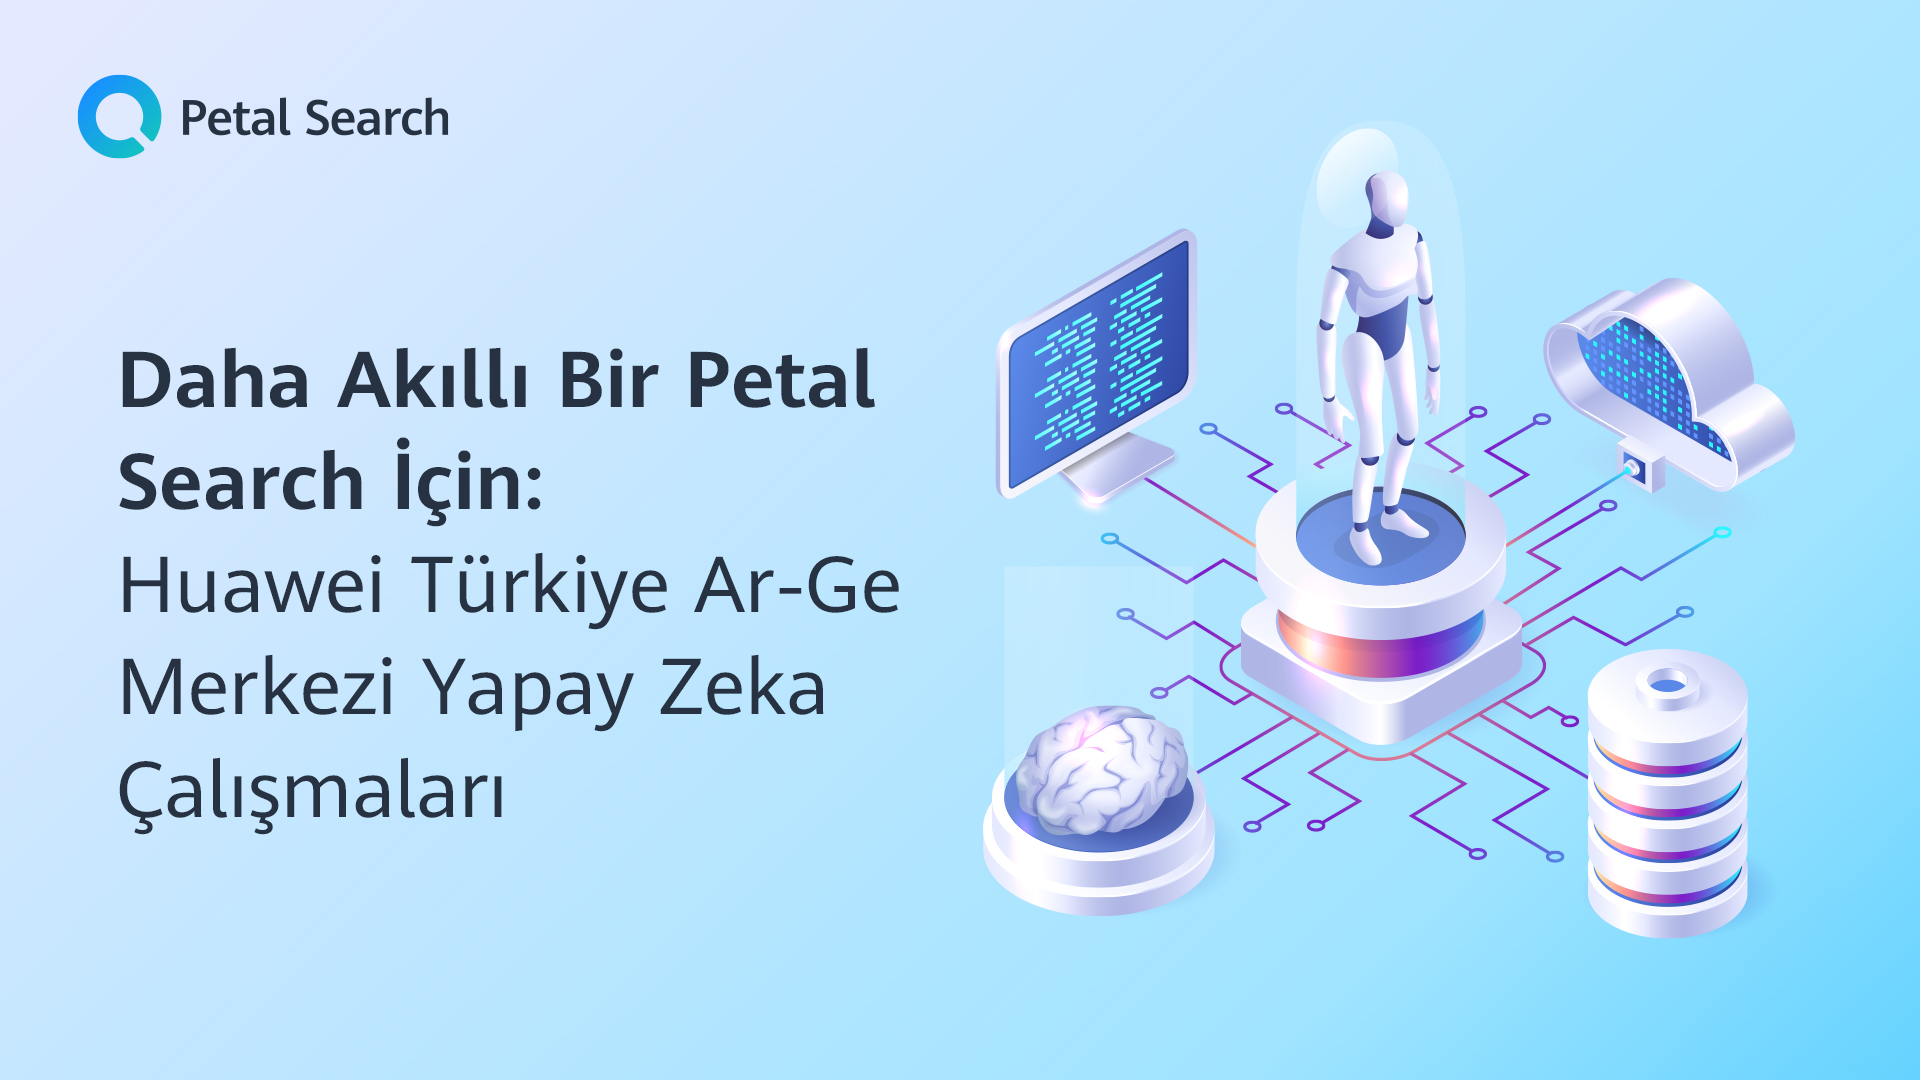 Daha Akıllı Bir Petal Search için: Huawei Türkiye Ar-Ge Merkezi Yapay Zeka Çalışmaları